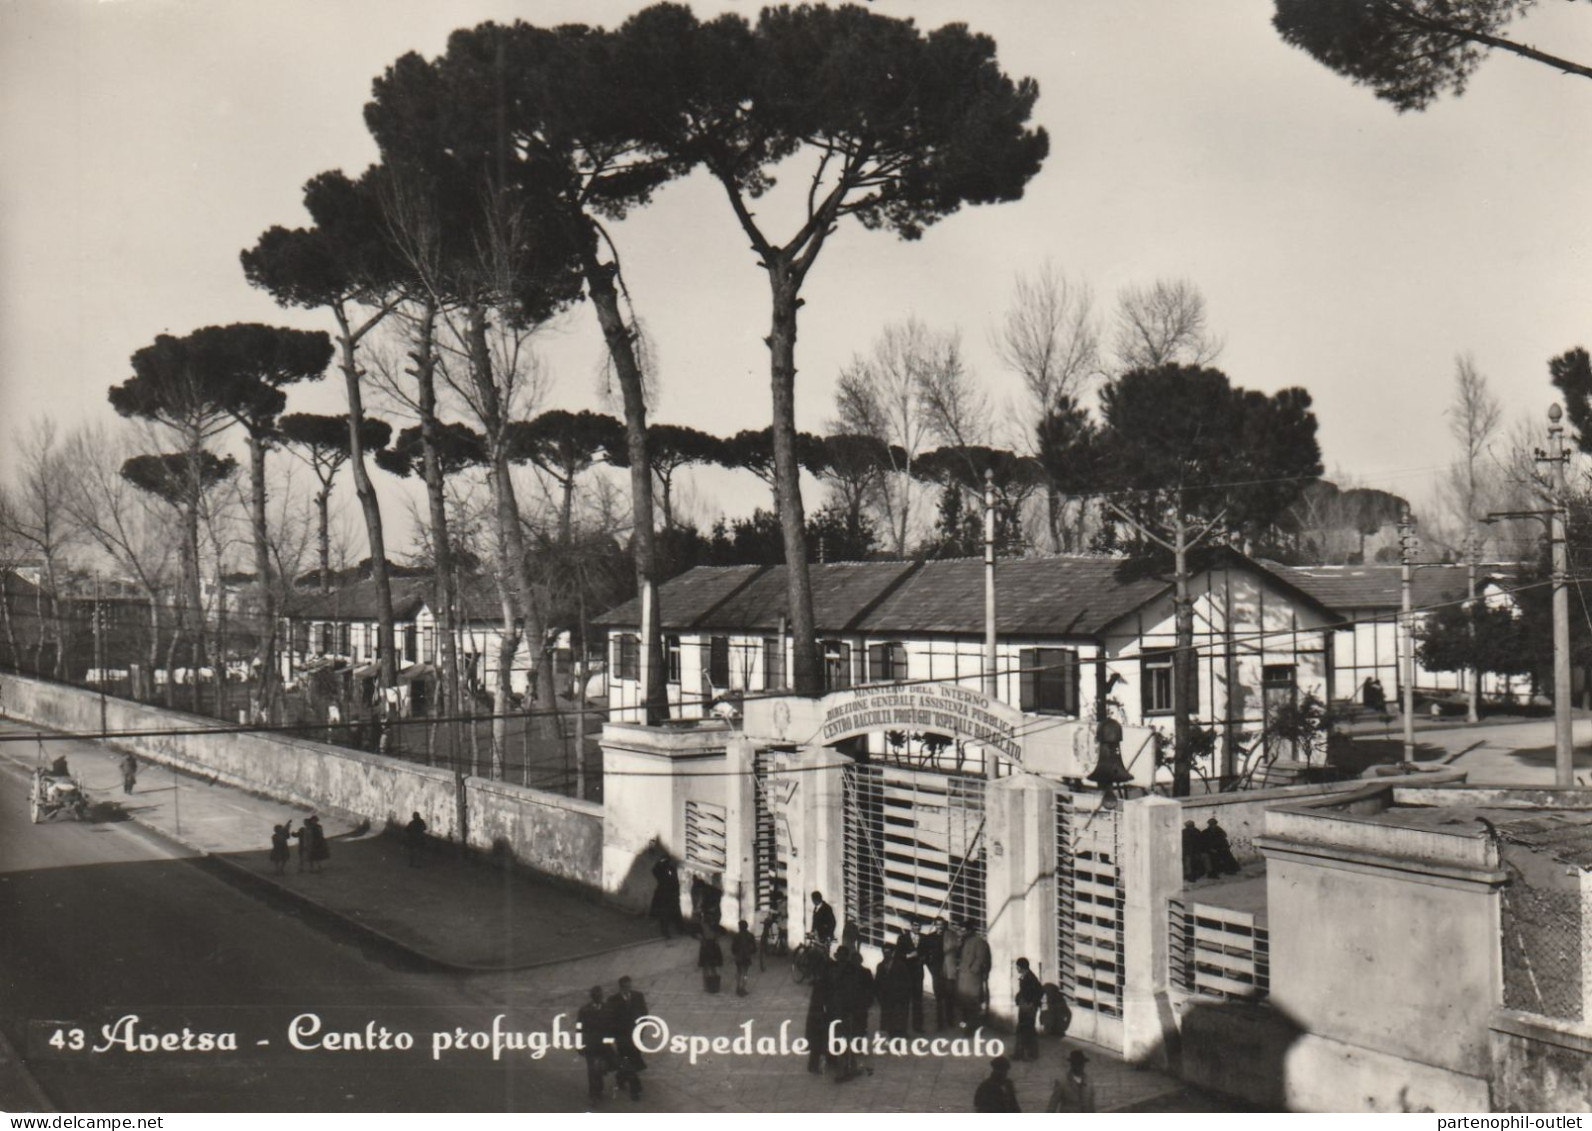 Cartolina  - Postcard /  Viaggiata - Sent  /  Aversa - Centro Profughi  ( Gran Formato ) - Aversa